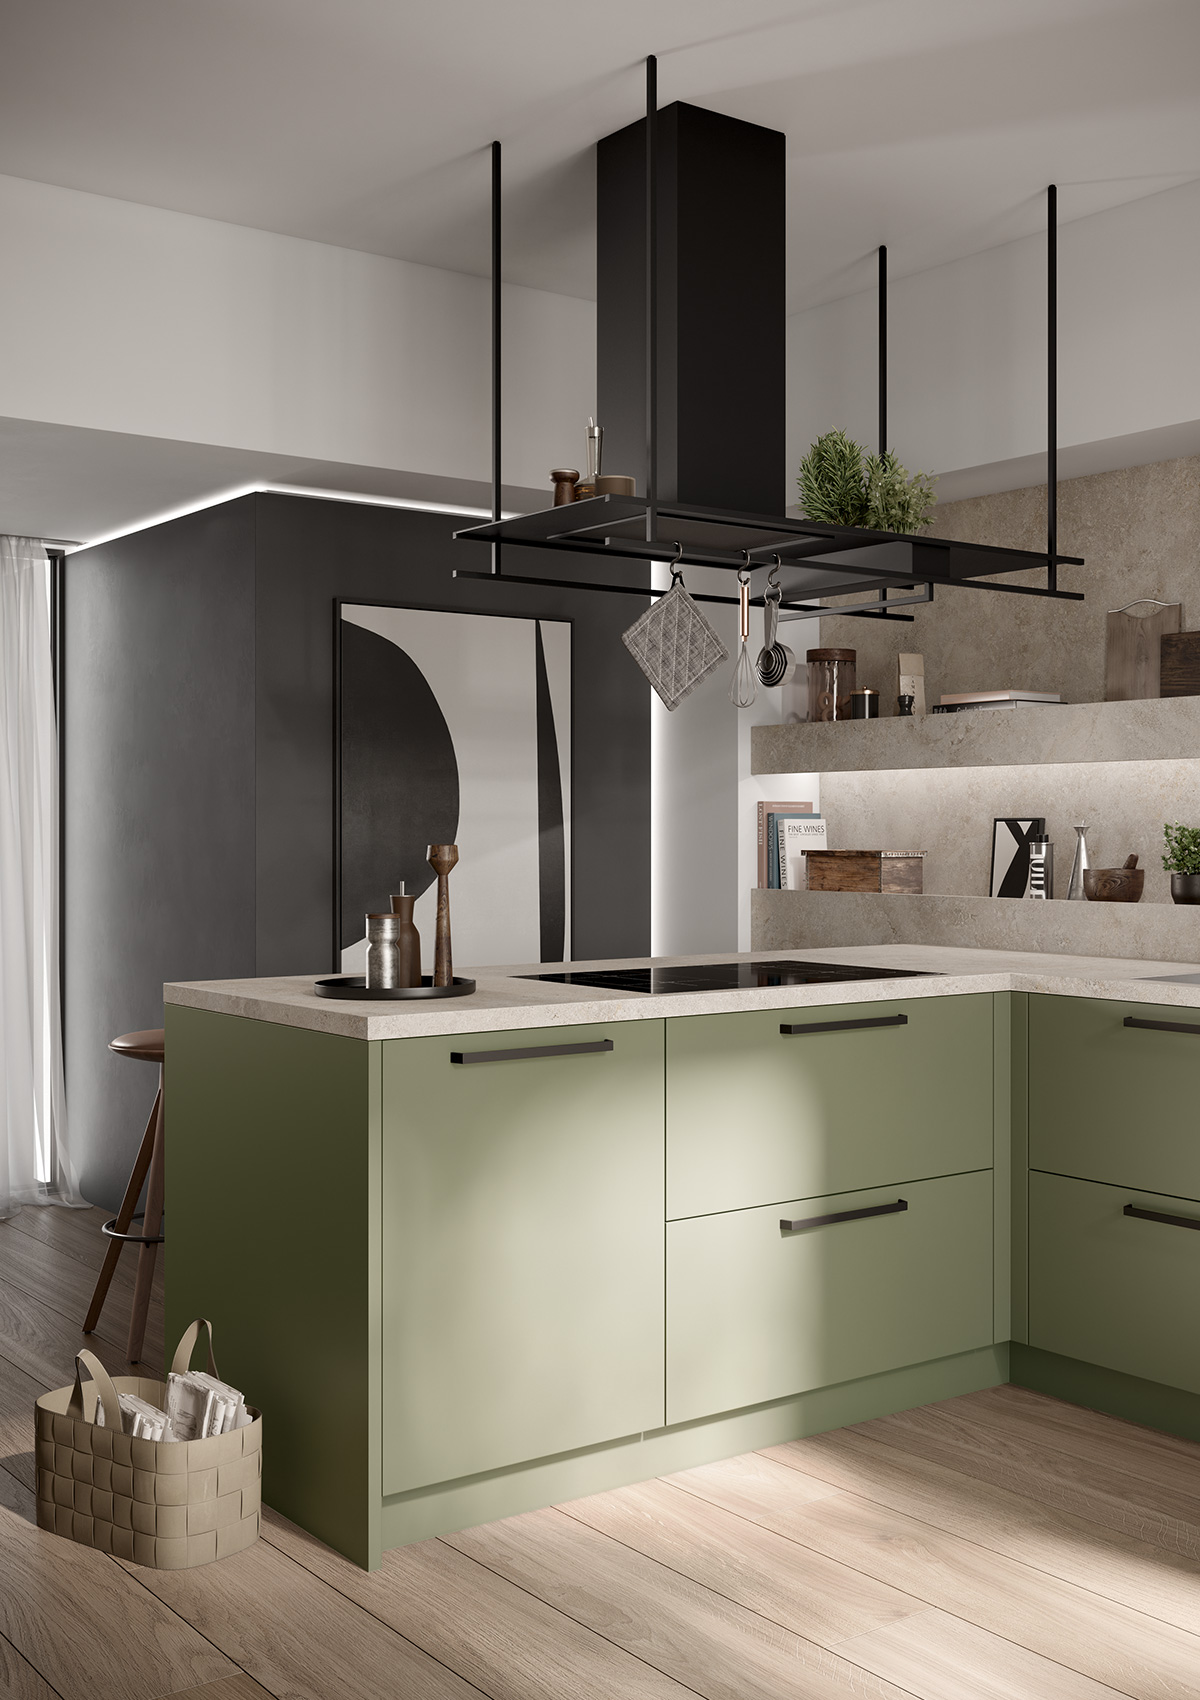 Imagen de la encimera de cocina de concept130 Scala verde olivo, encima campana extractora negra, en primer plano mesa de comedor redonda con sillas.